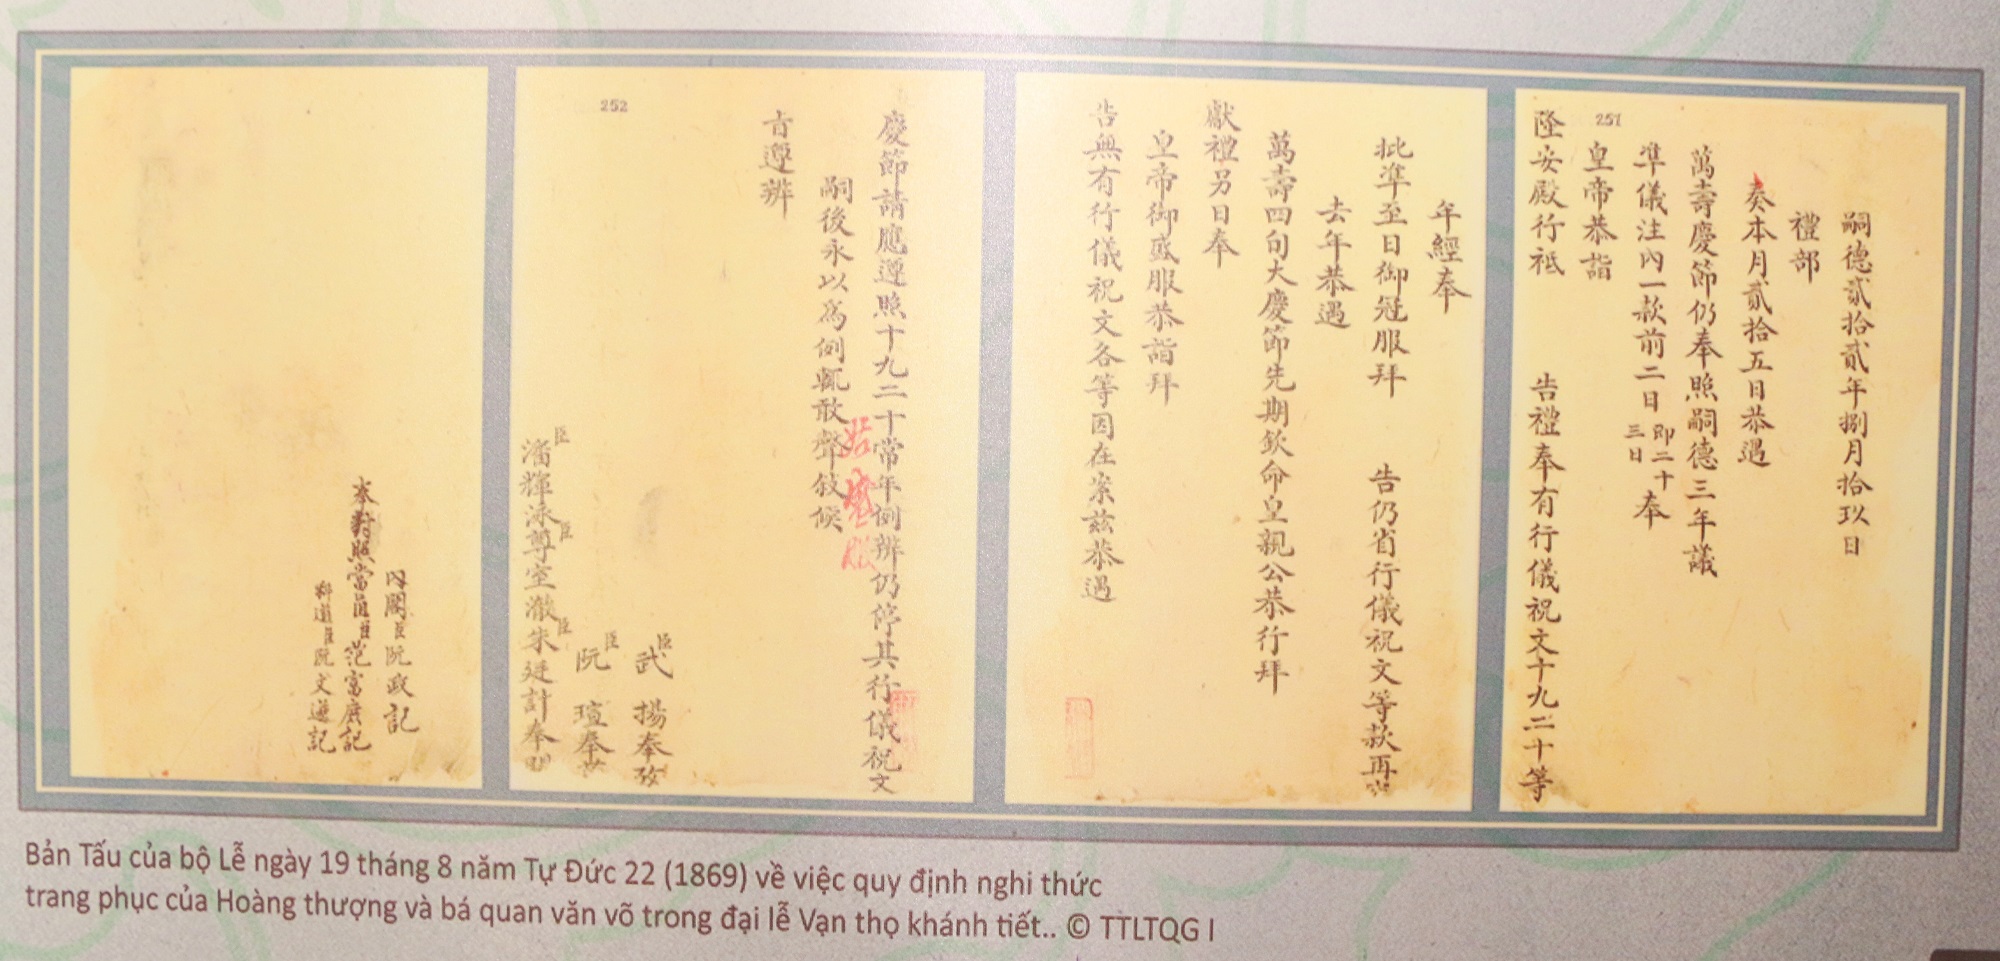 Các quy định nghiêm ngặt được nêu rất rõ trong các tài liệu châu bản triều Nguyễn được trưng bày tại triển lãm